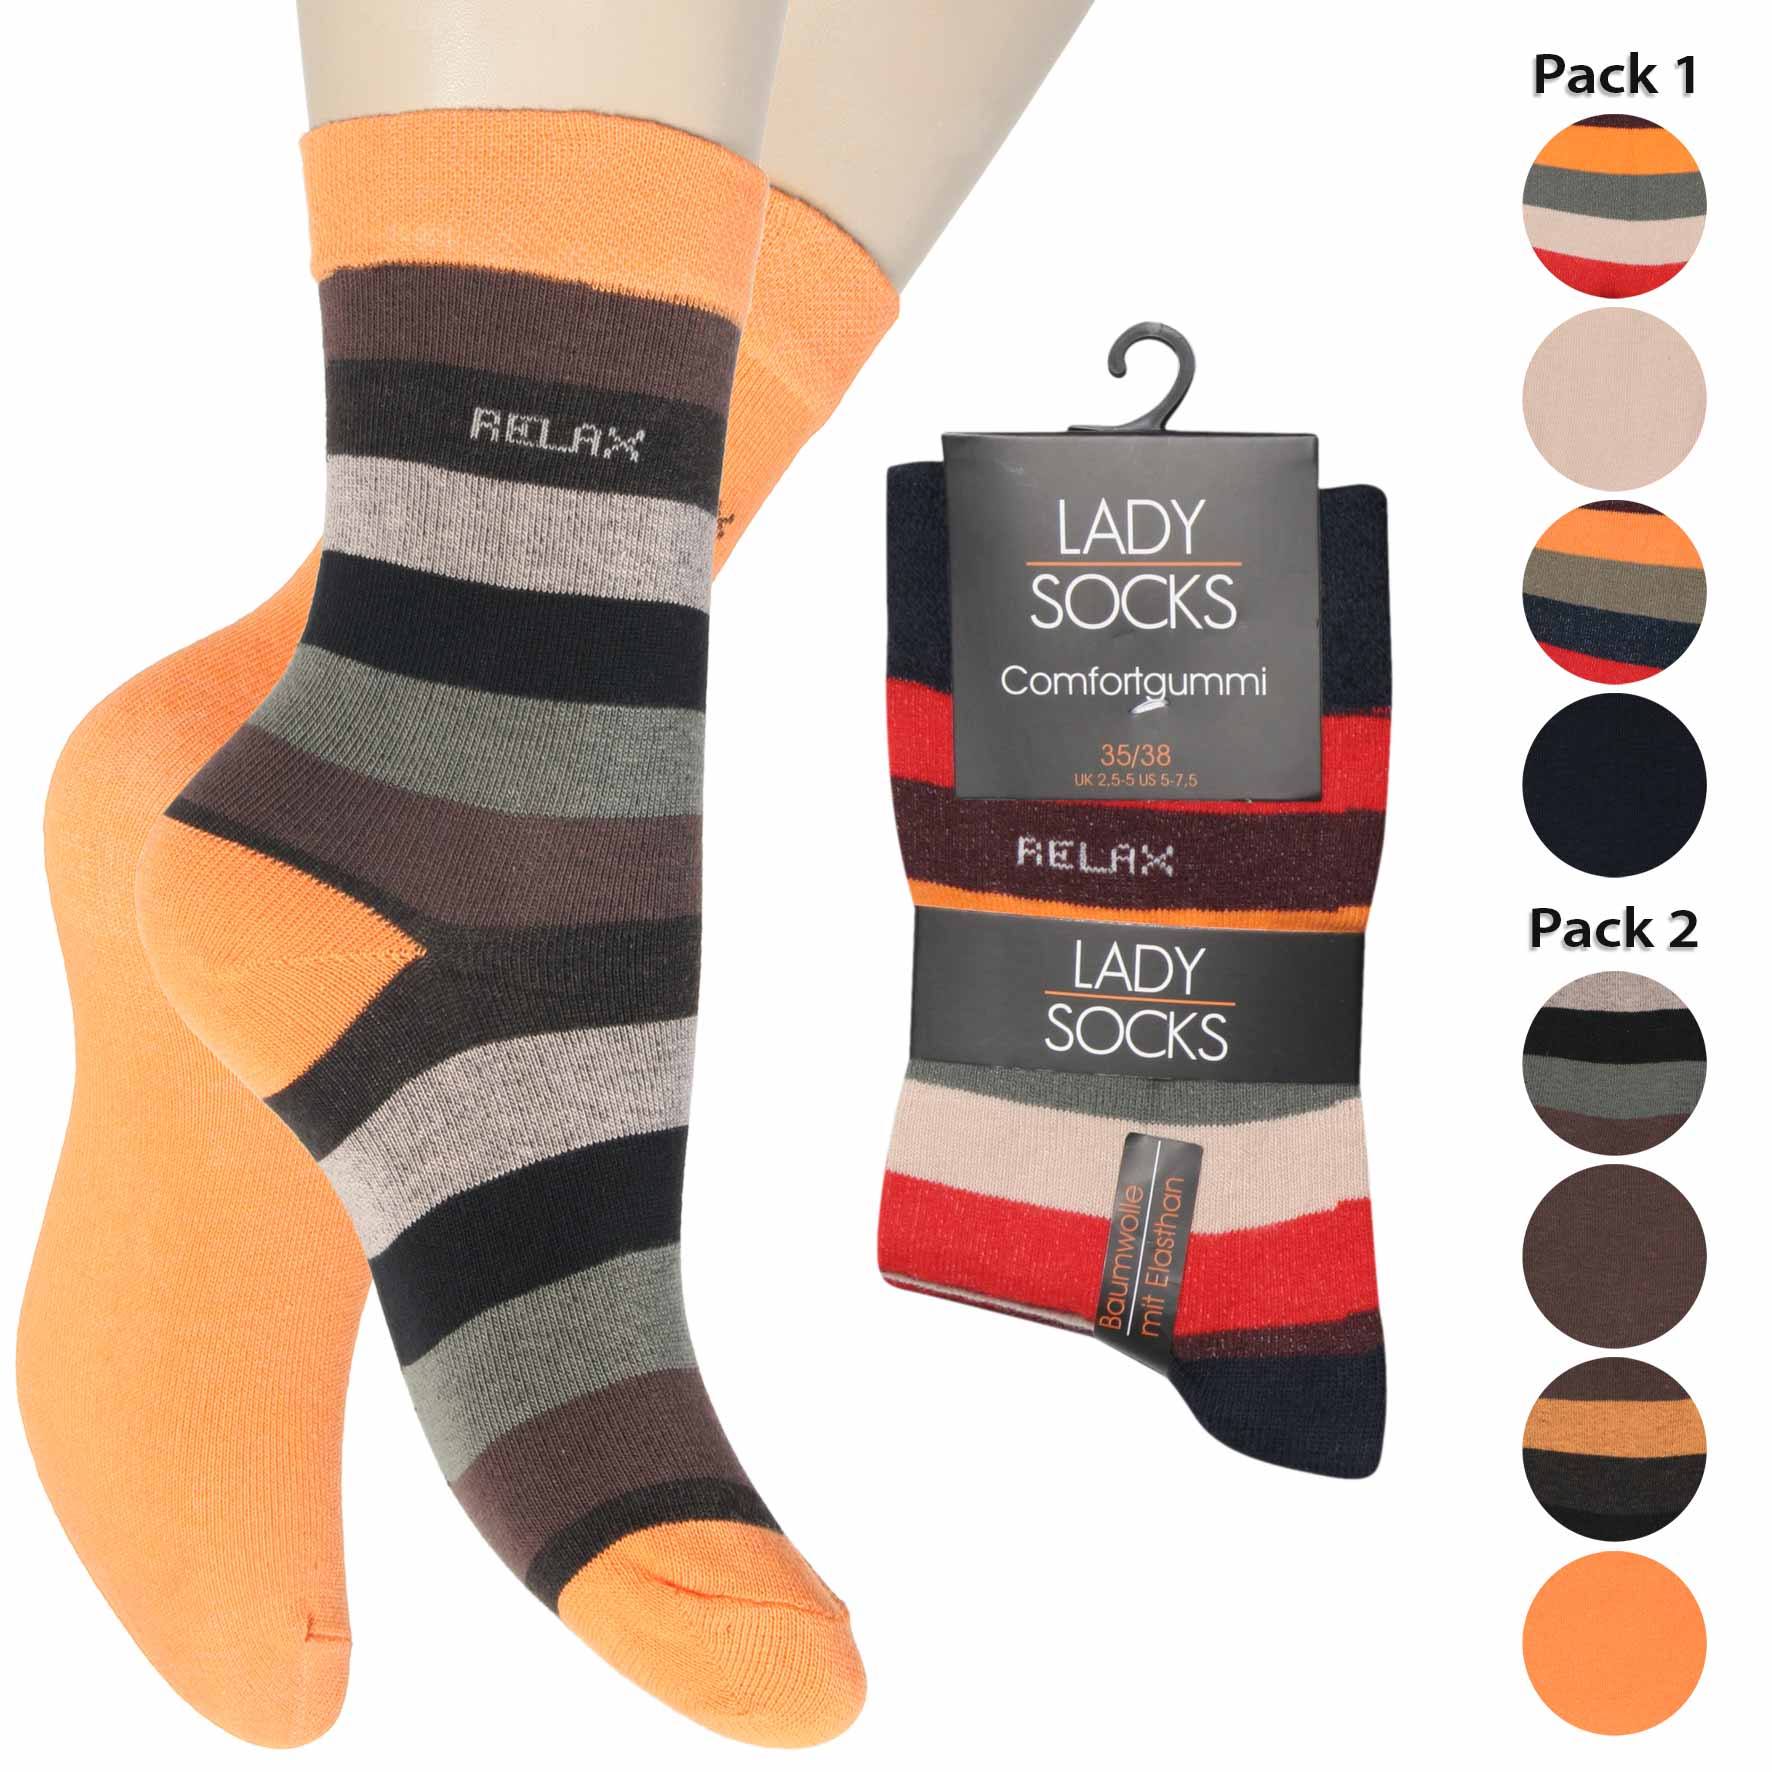 Damen Socken 4er-Pack BW/EL Piqué-Bund Streifen